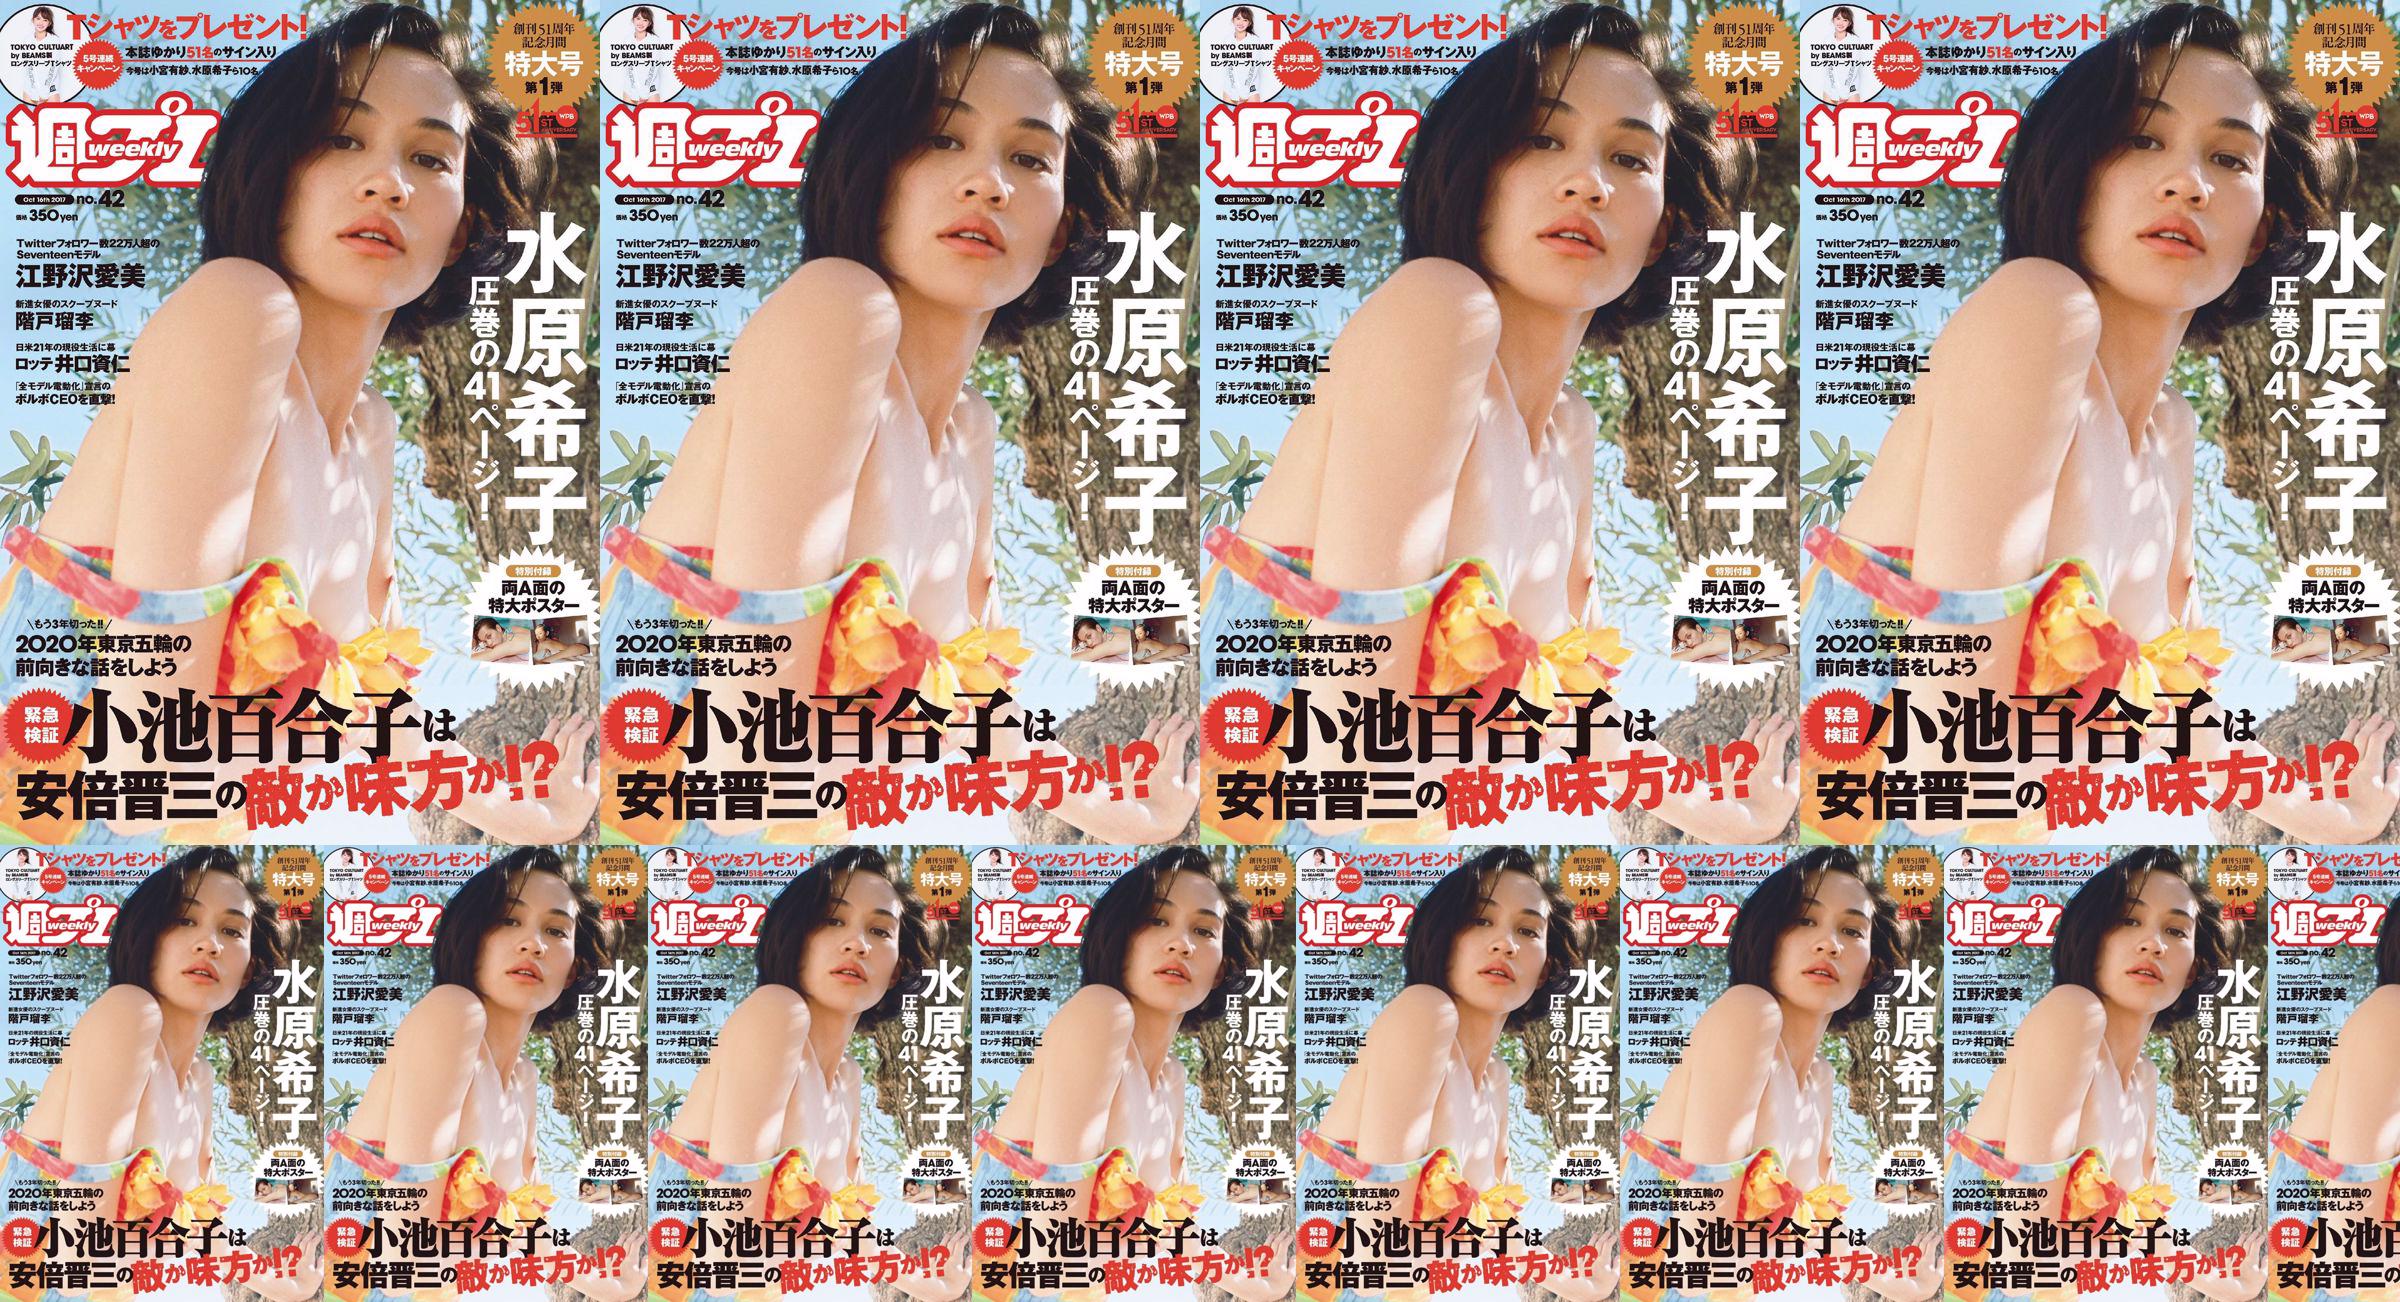 Kiko Mizuhara Manami Enosawa Serina Fukui Miu Nakamura Ruri Shinato [Playboy semanal] 2017 No 42 Revista fotográfica No.99f040 Página 18